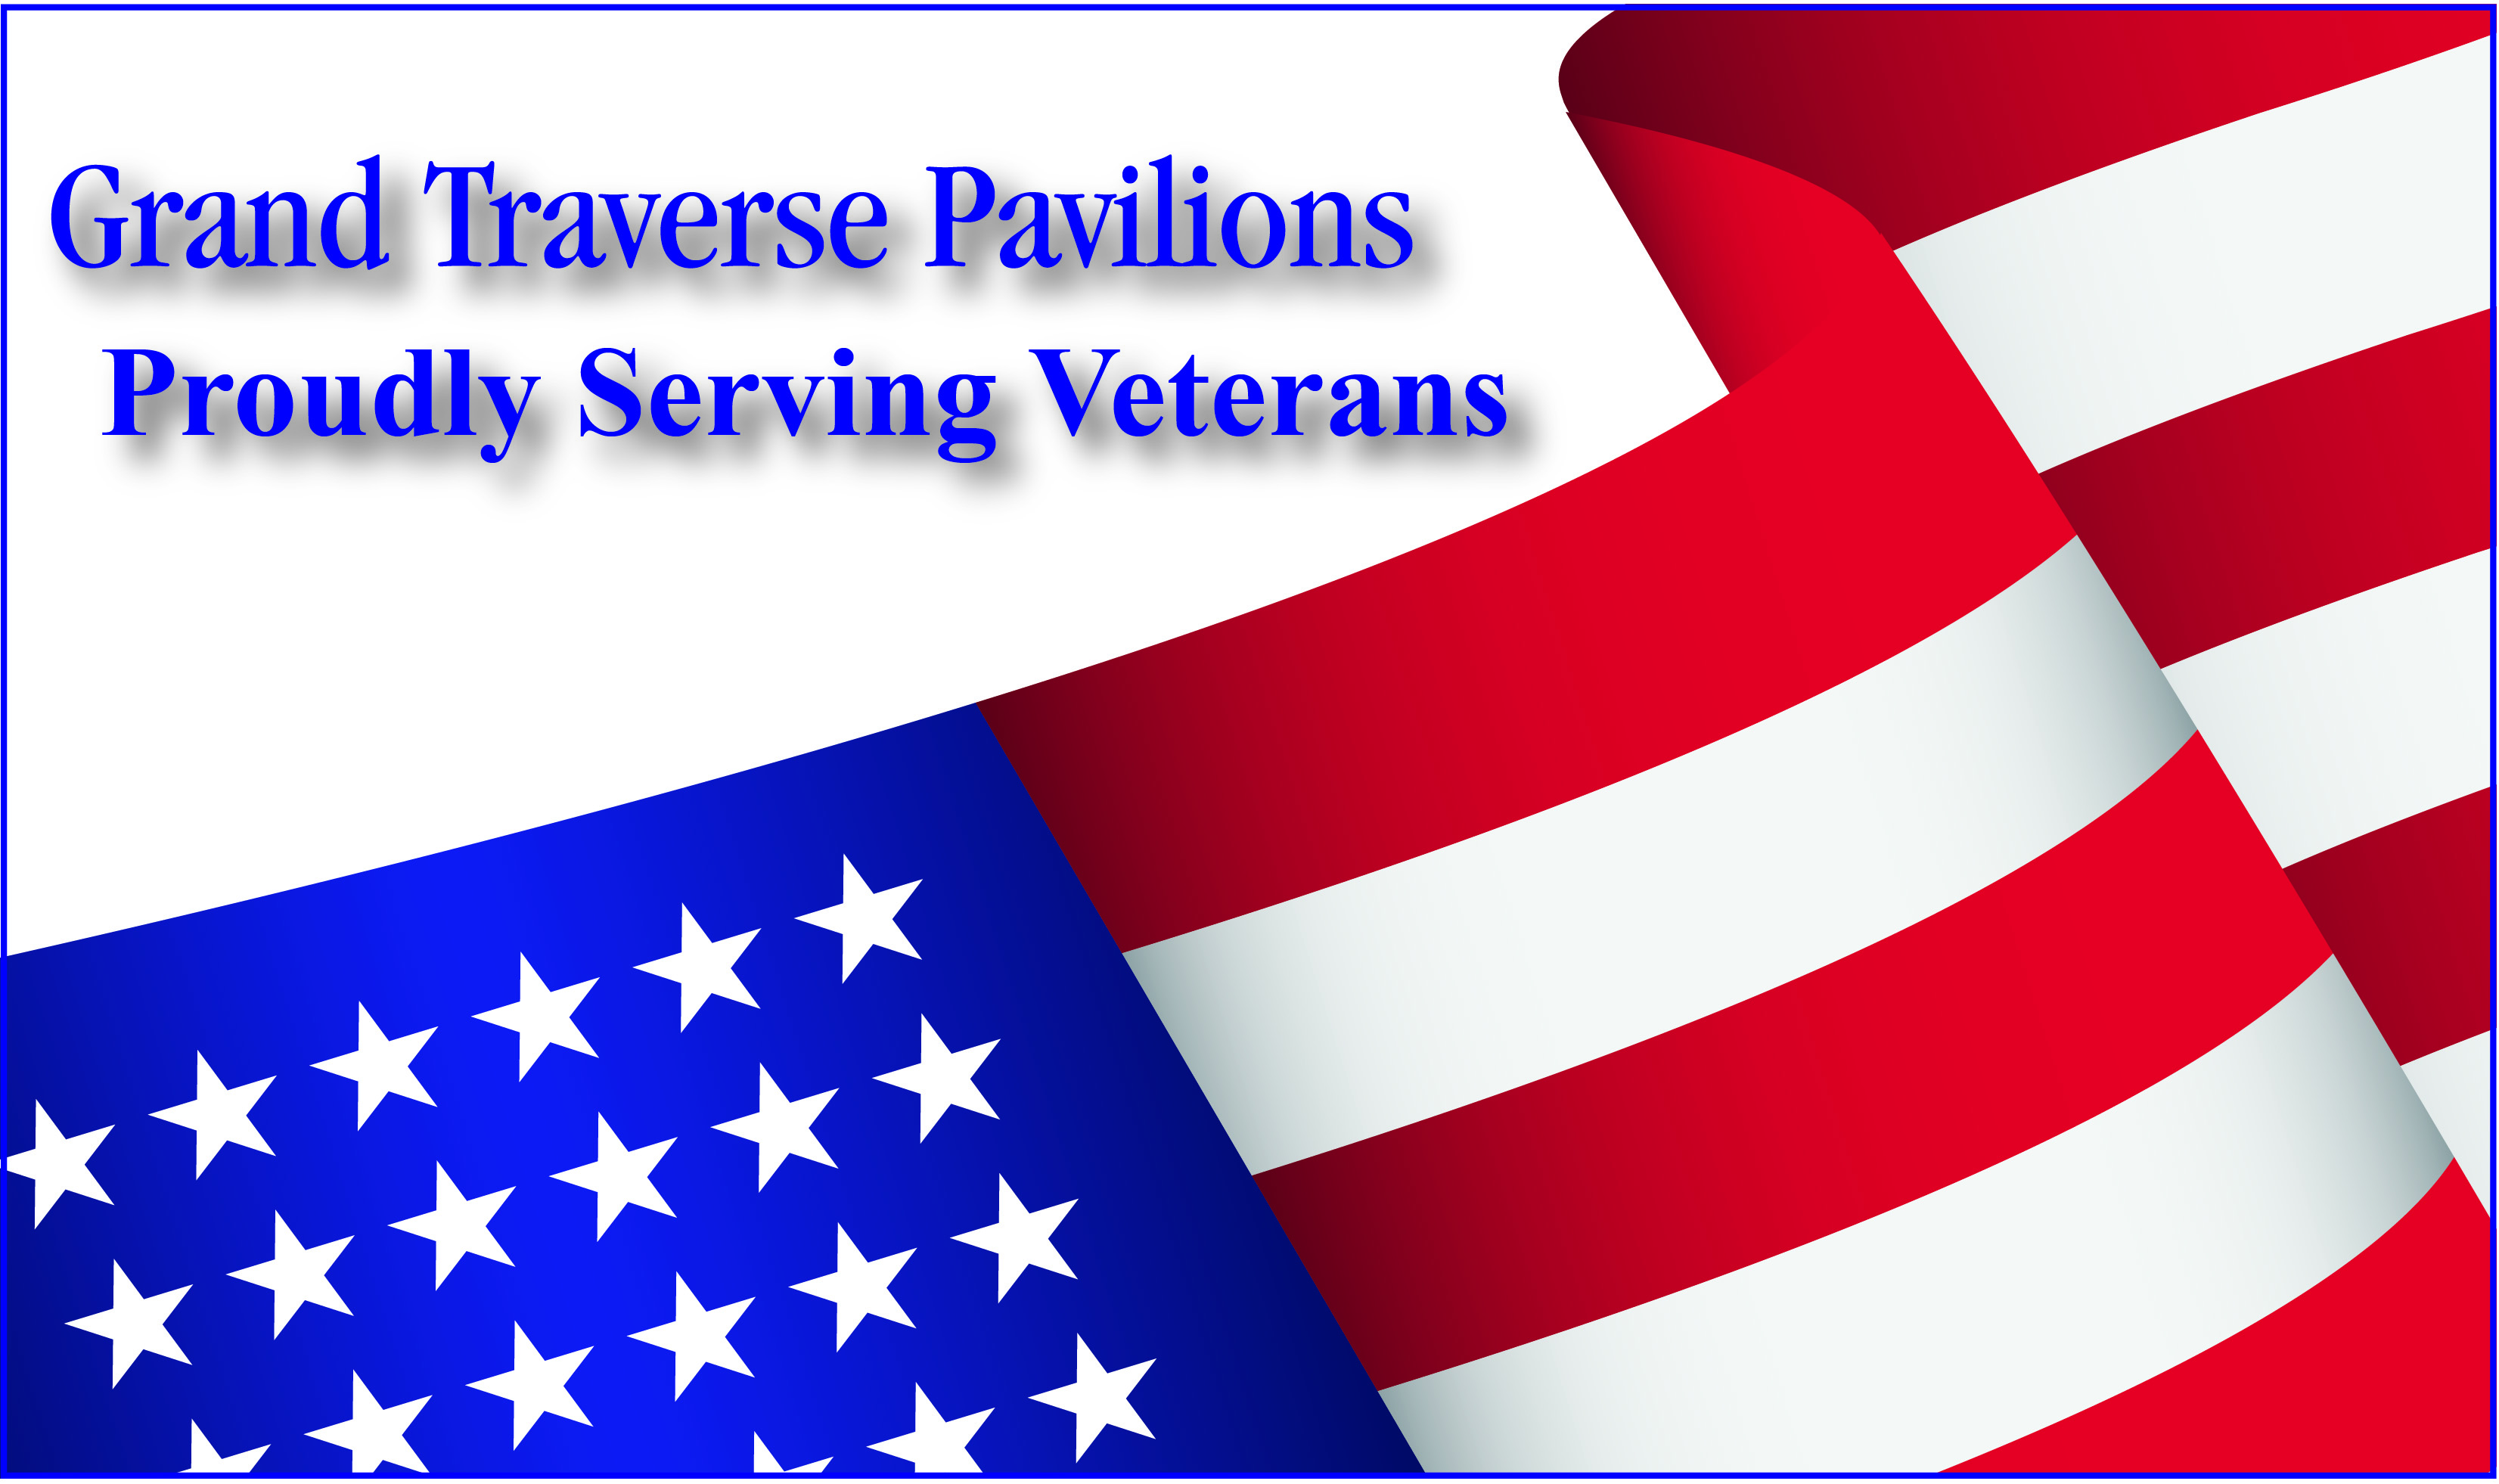 Grand Traverse Pavilions Proudly Serving Veterans